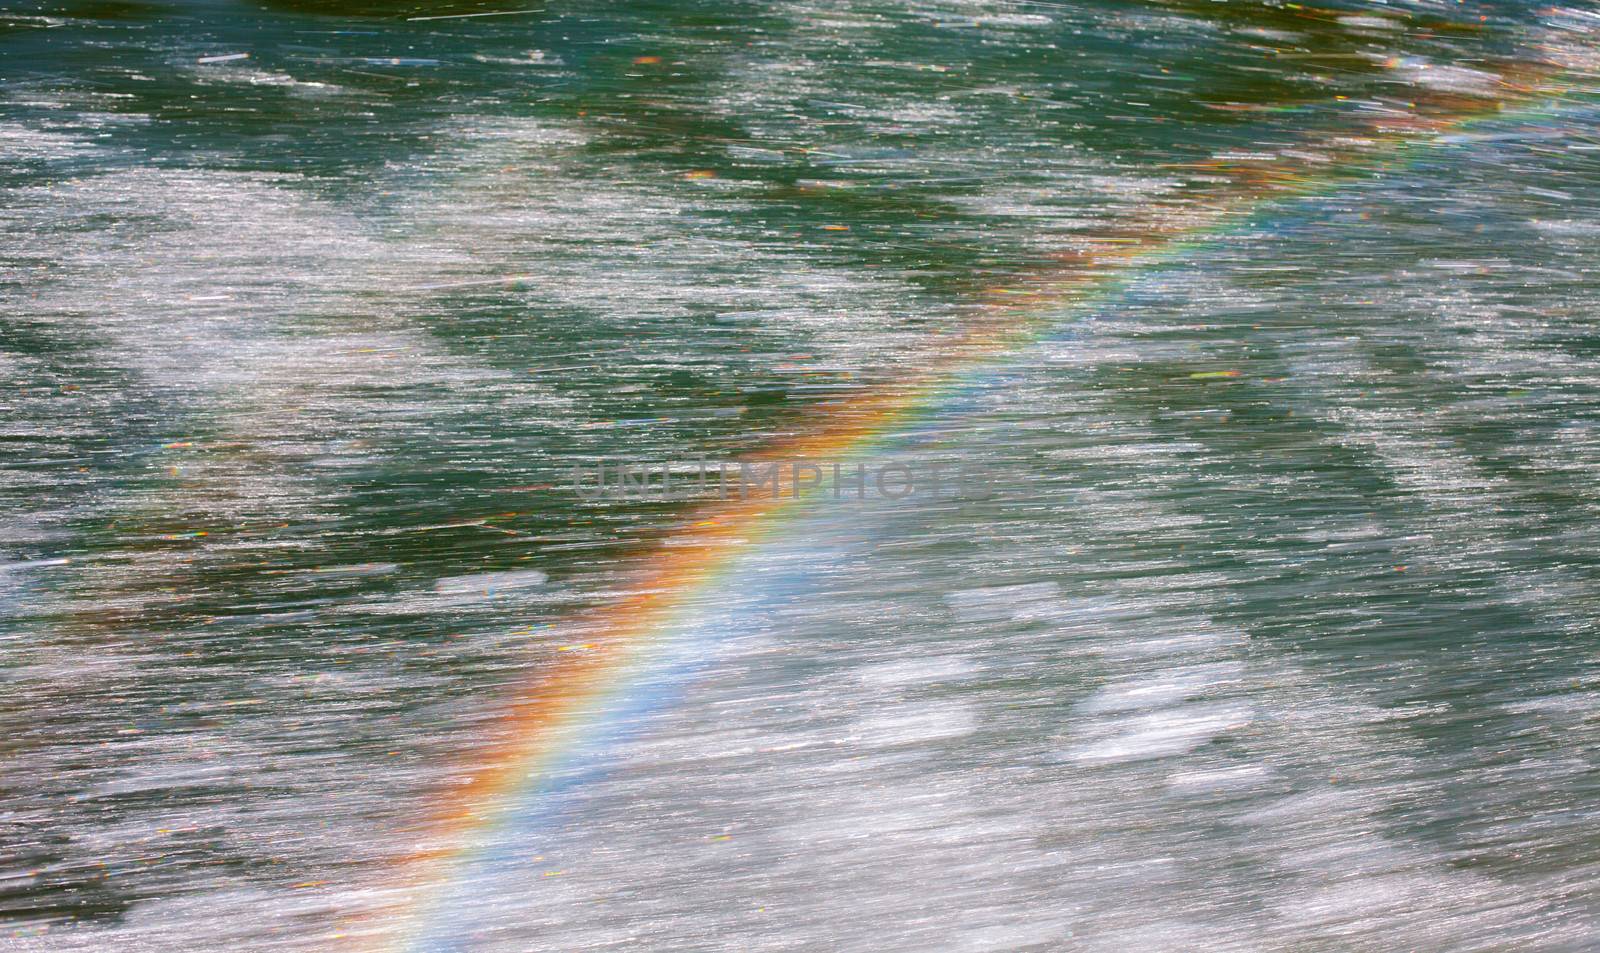 Rainbow by anelina